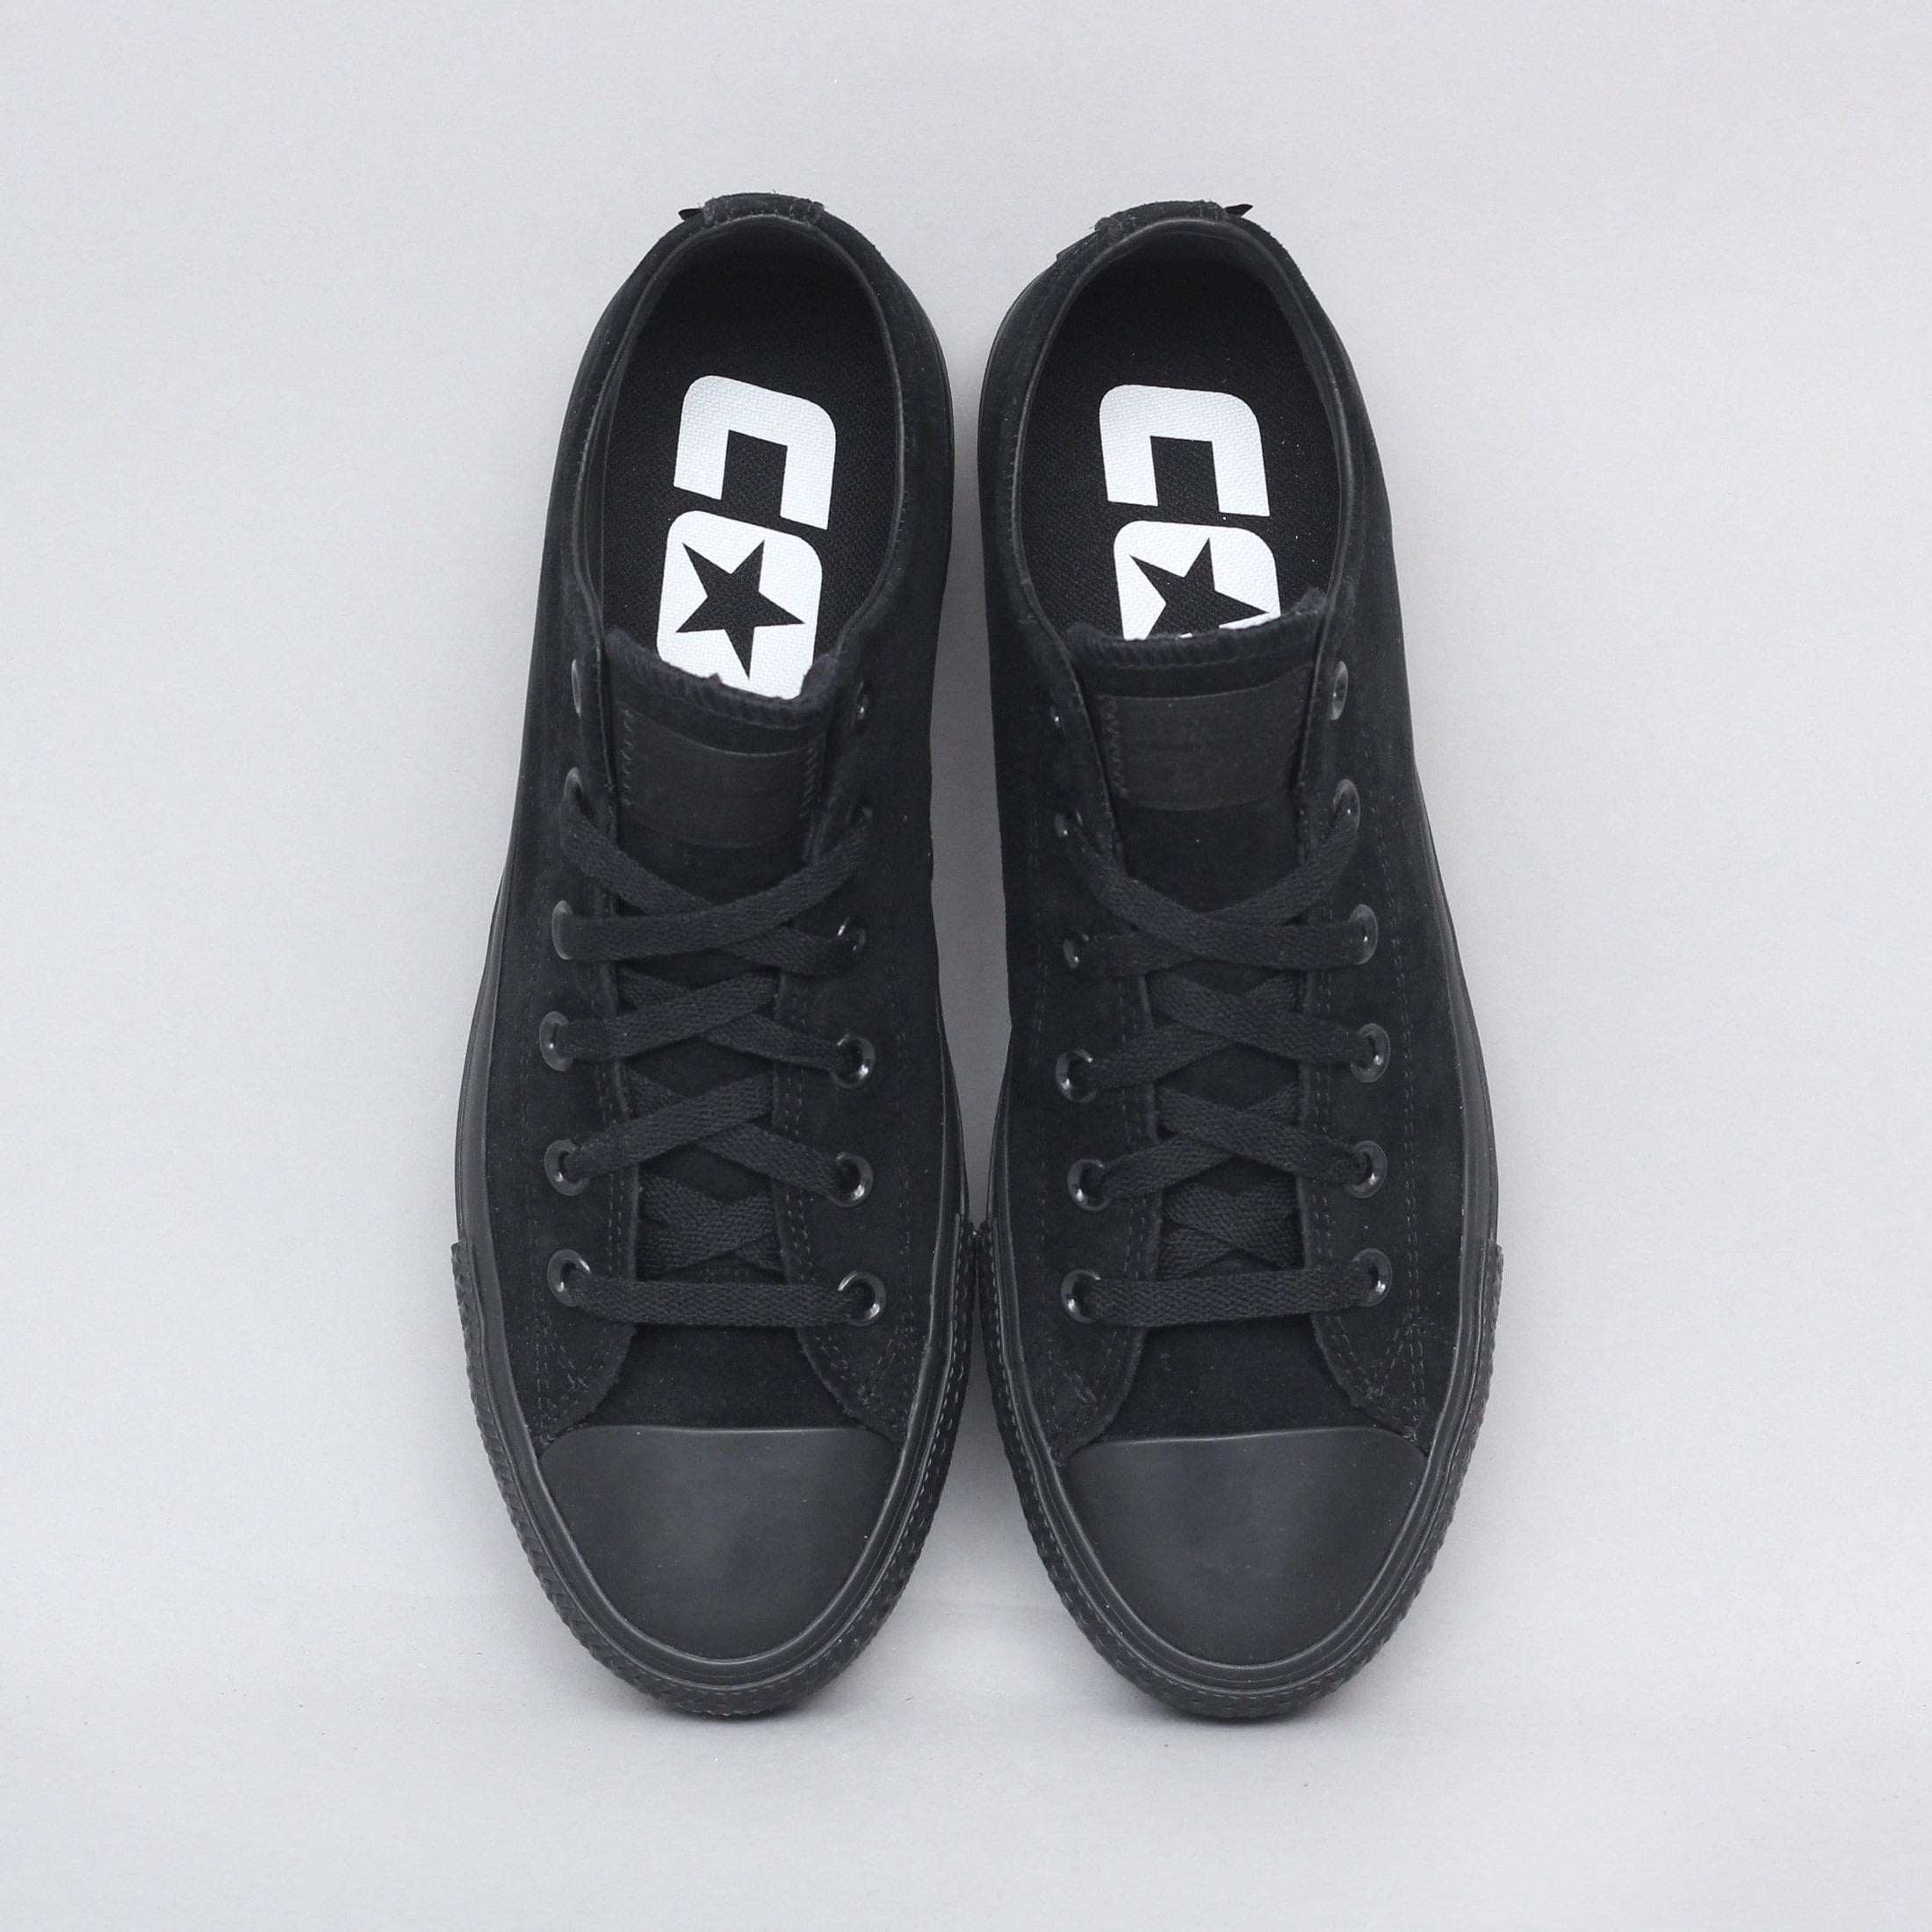 Converse CTAS Pro OX Shoes Black / Black / Black